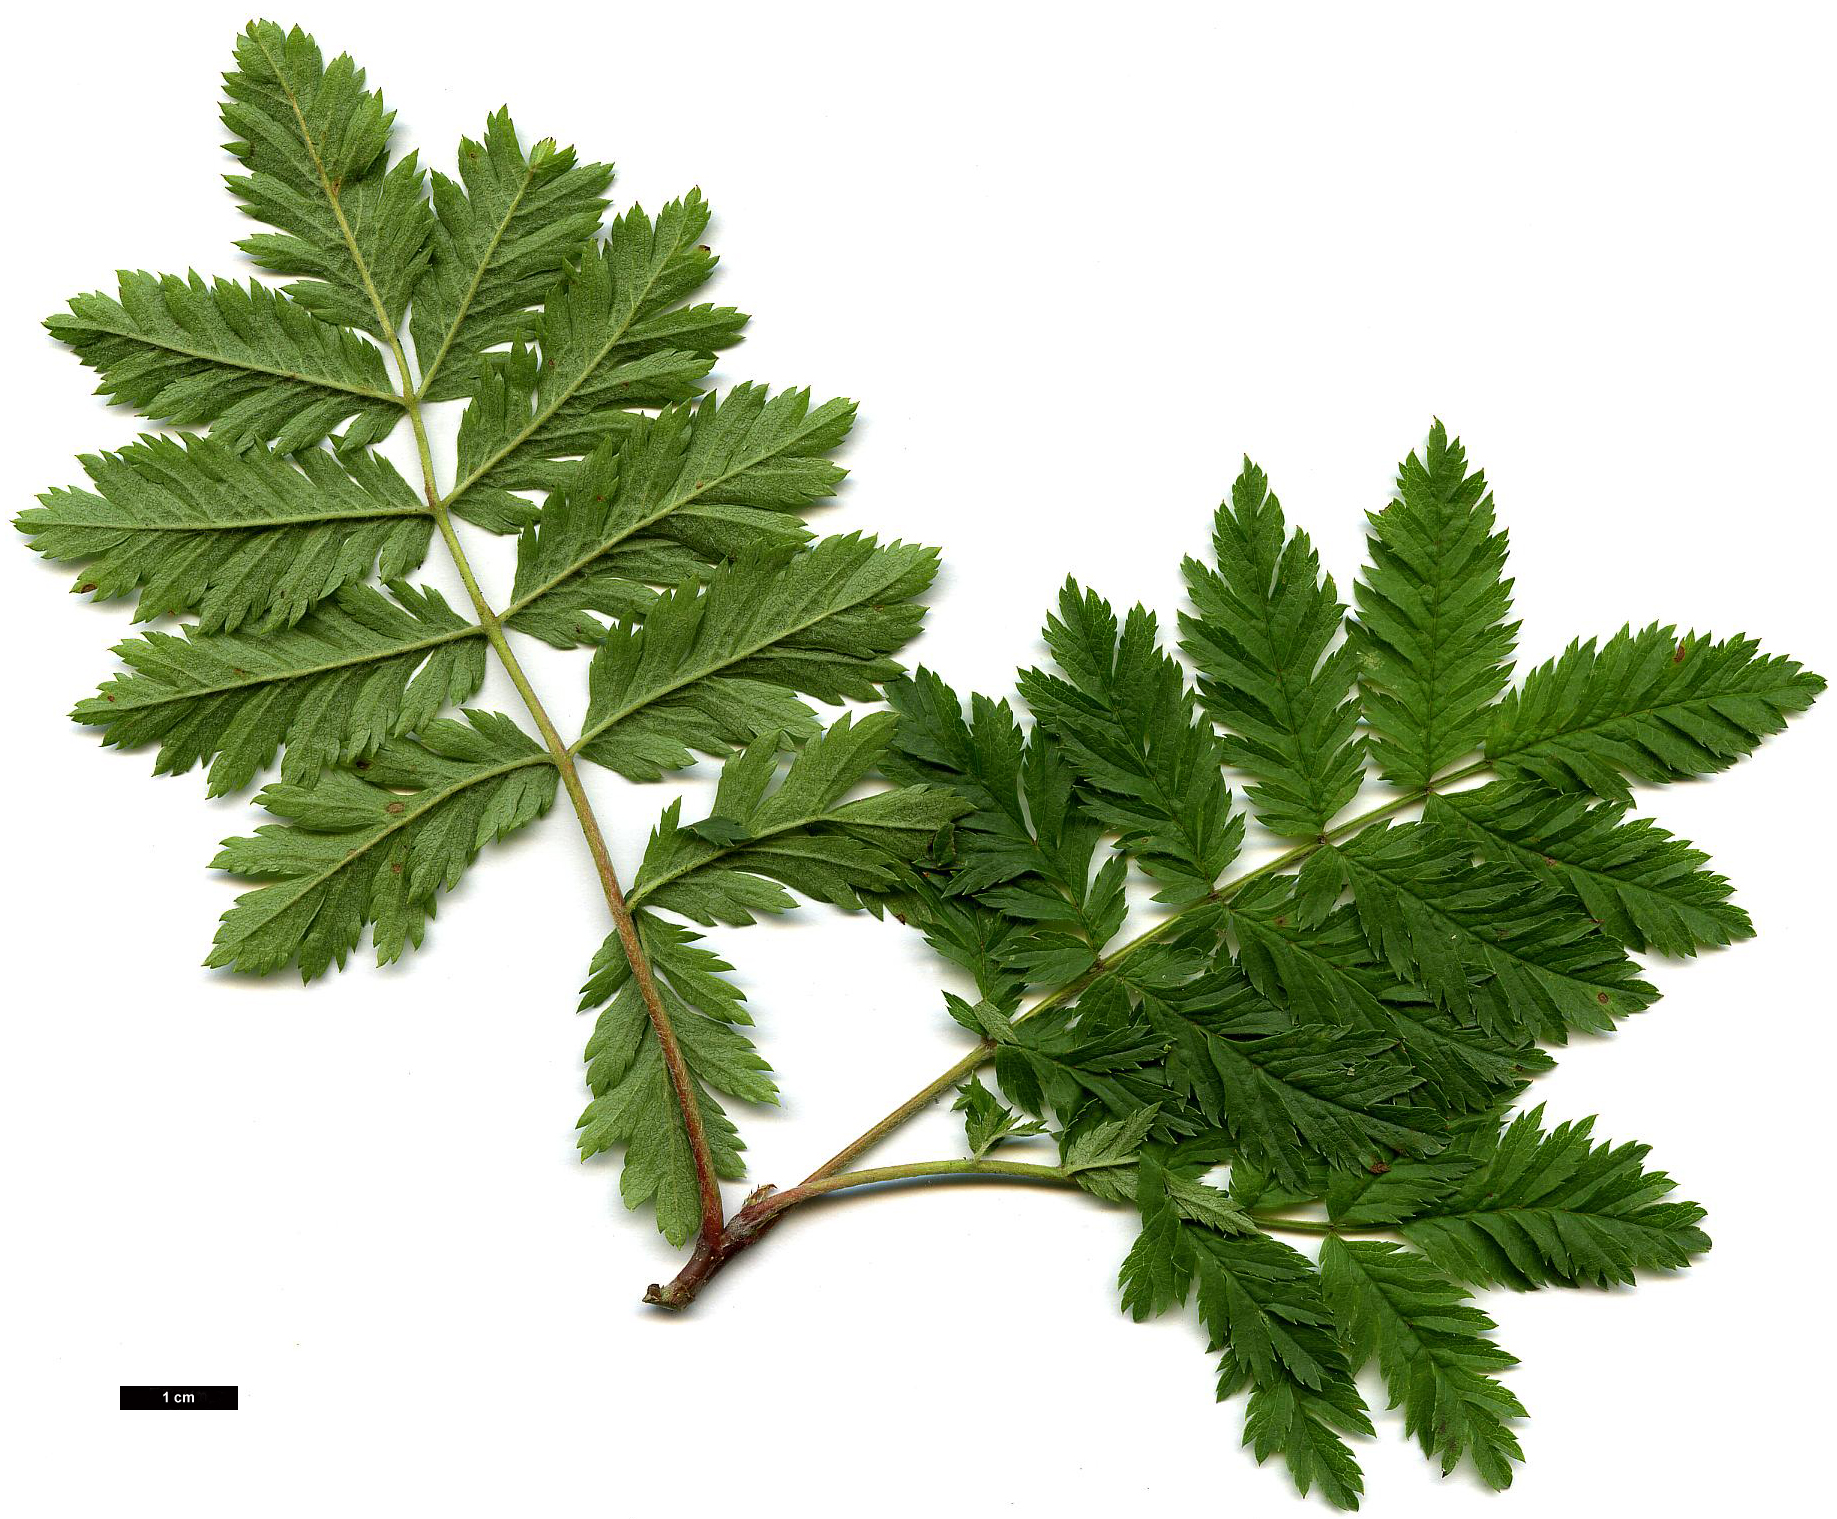 High resolution image: Family: Rosaceae - Genus: Sorbus - Taxon: aucuparia - SpeciesSub: 'Aspleniifolia'